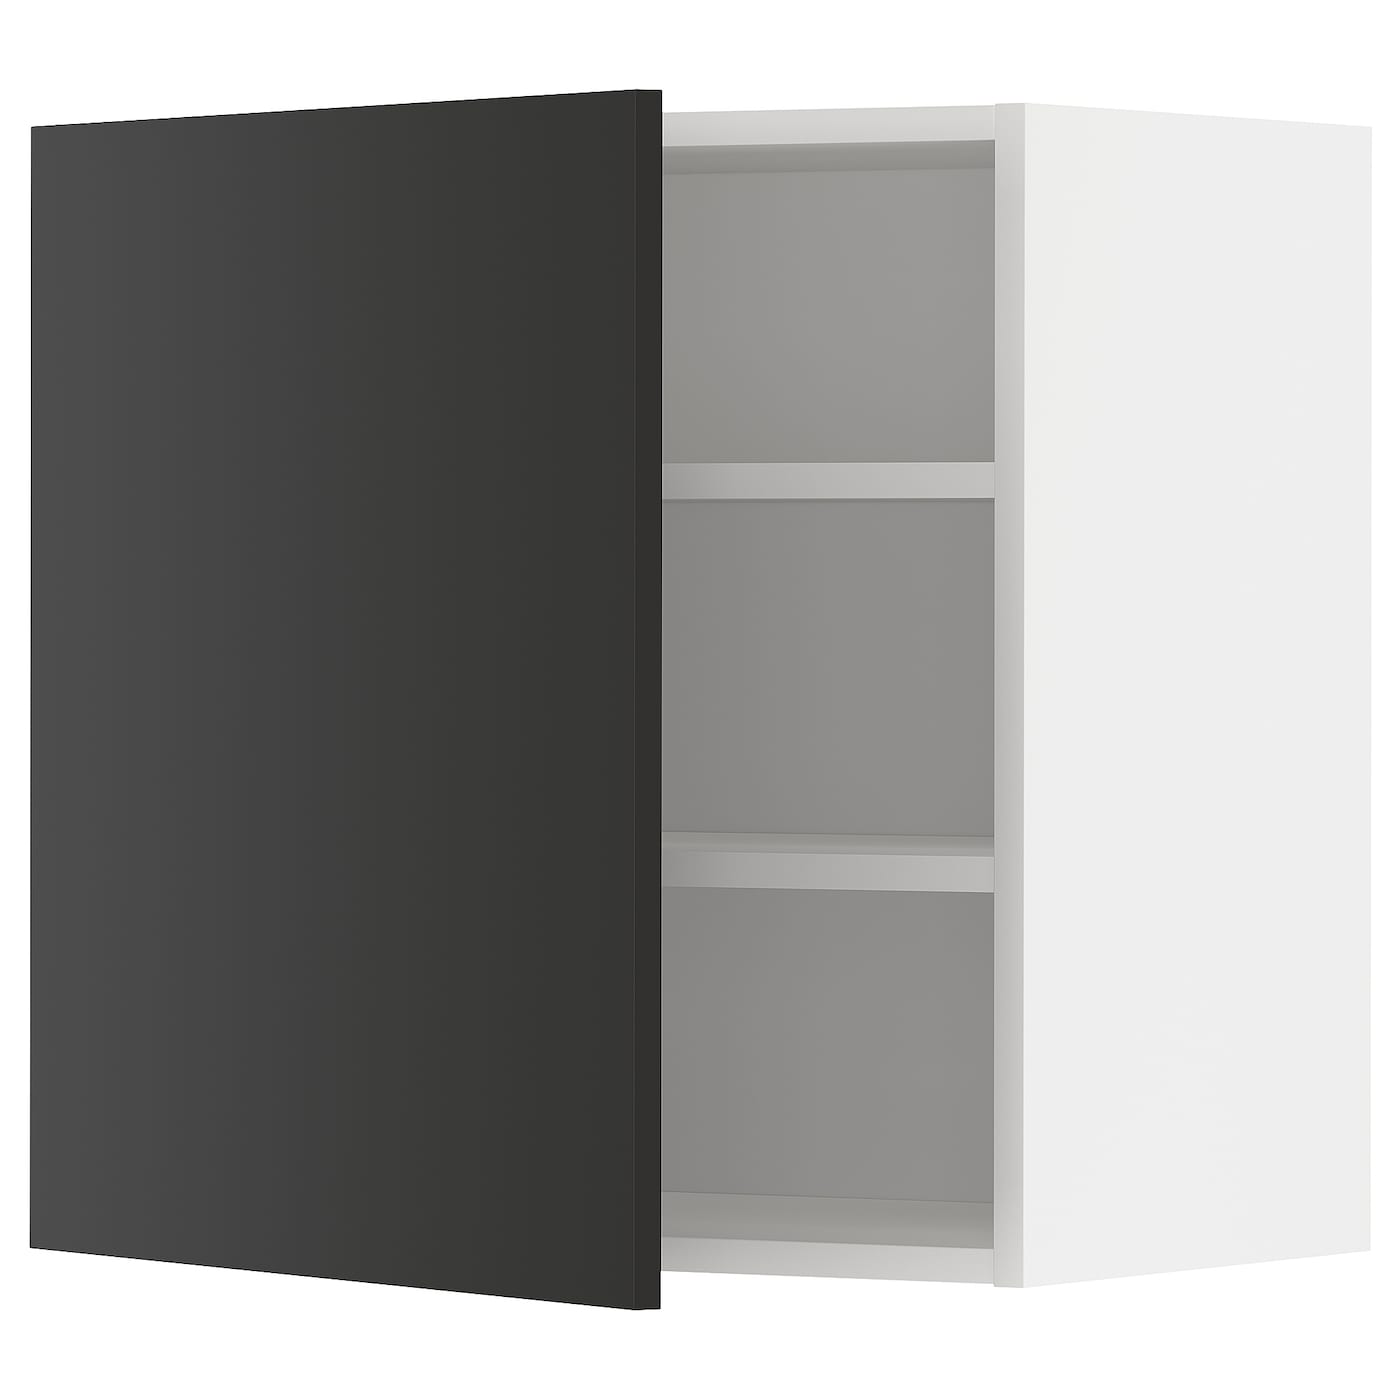 Навесной шкаф с полкой - METOD IKEA/ МЕТОД ИКЕА, 60х60 см, черный/белый